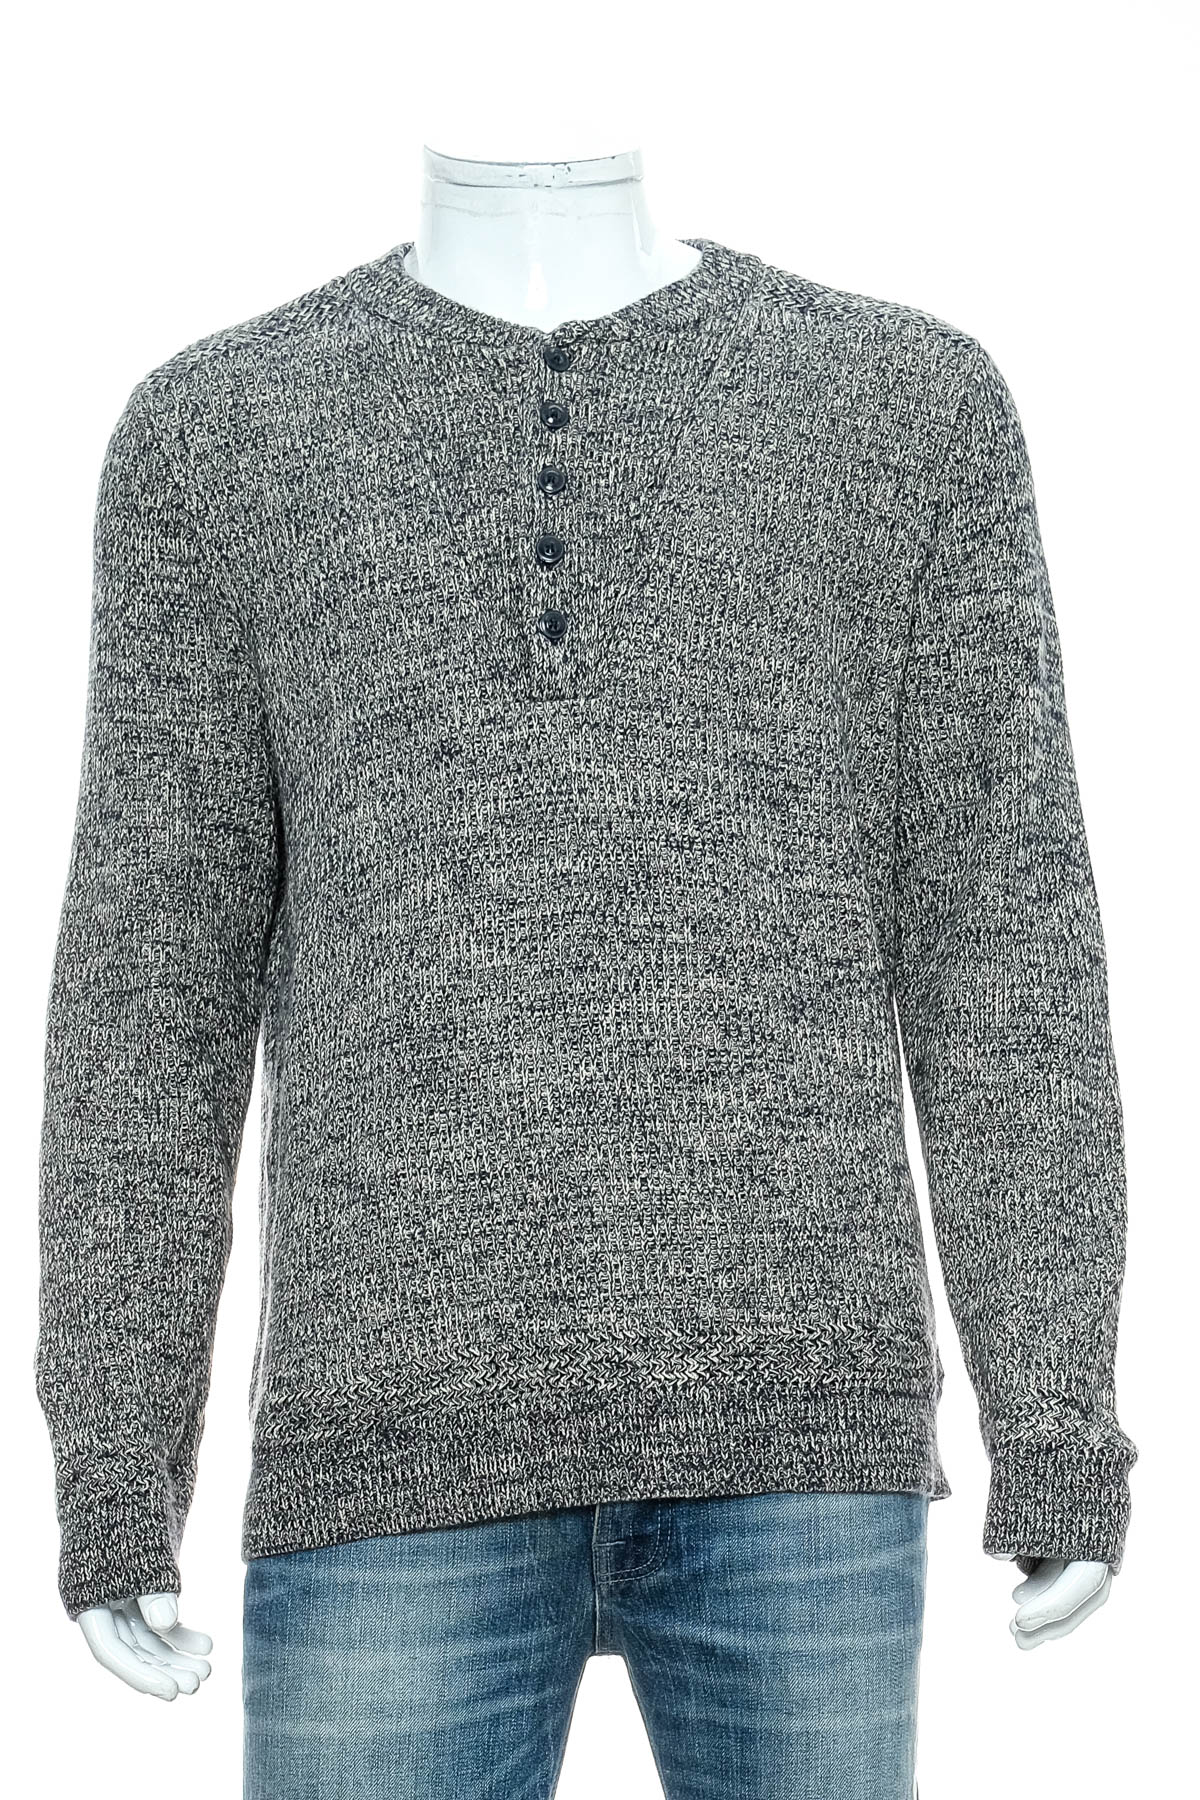 Men's sweater - BEAN SIGNATURE - 0